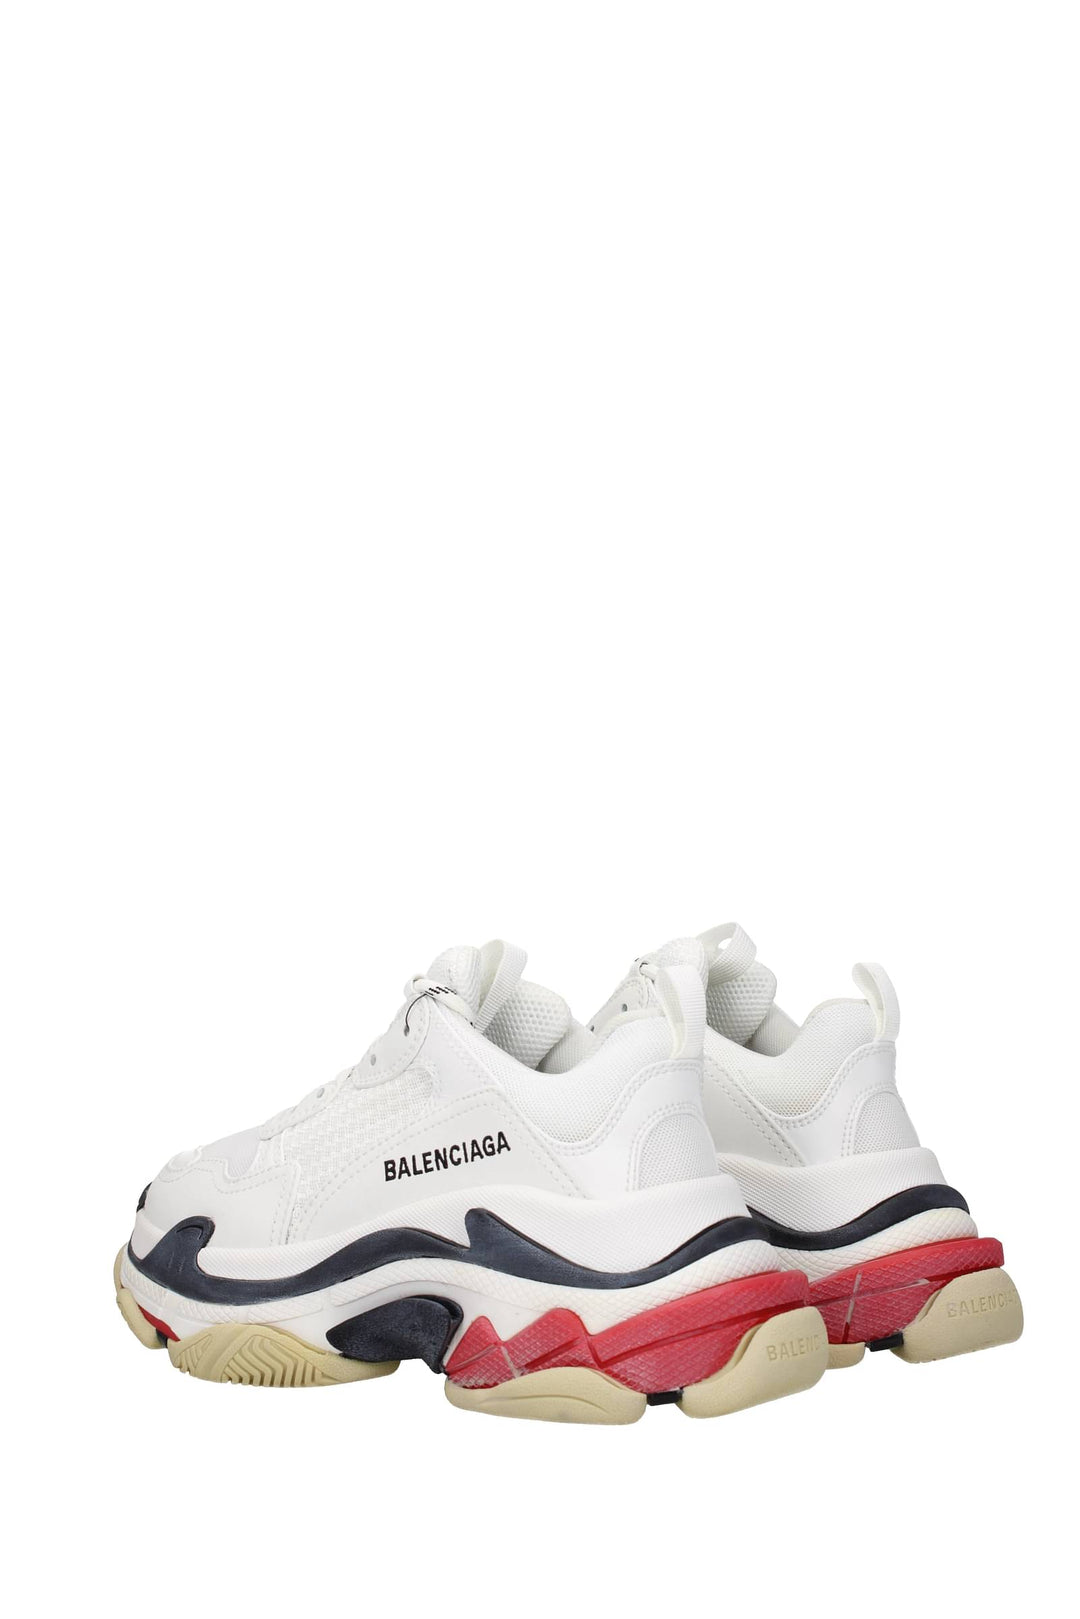 Sneakers Triple S Tessuto Bianco Rosso - Balenciaga - Donna